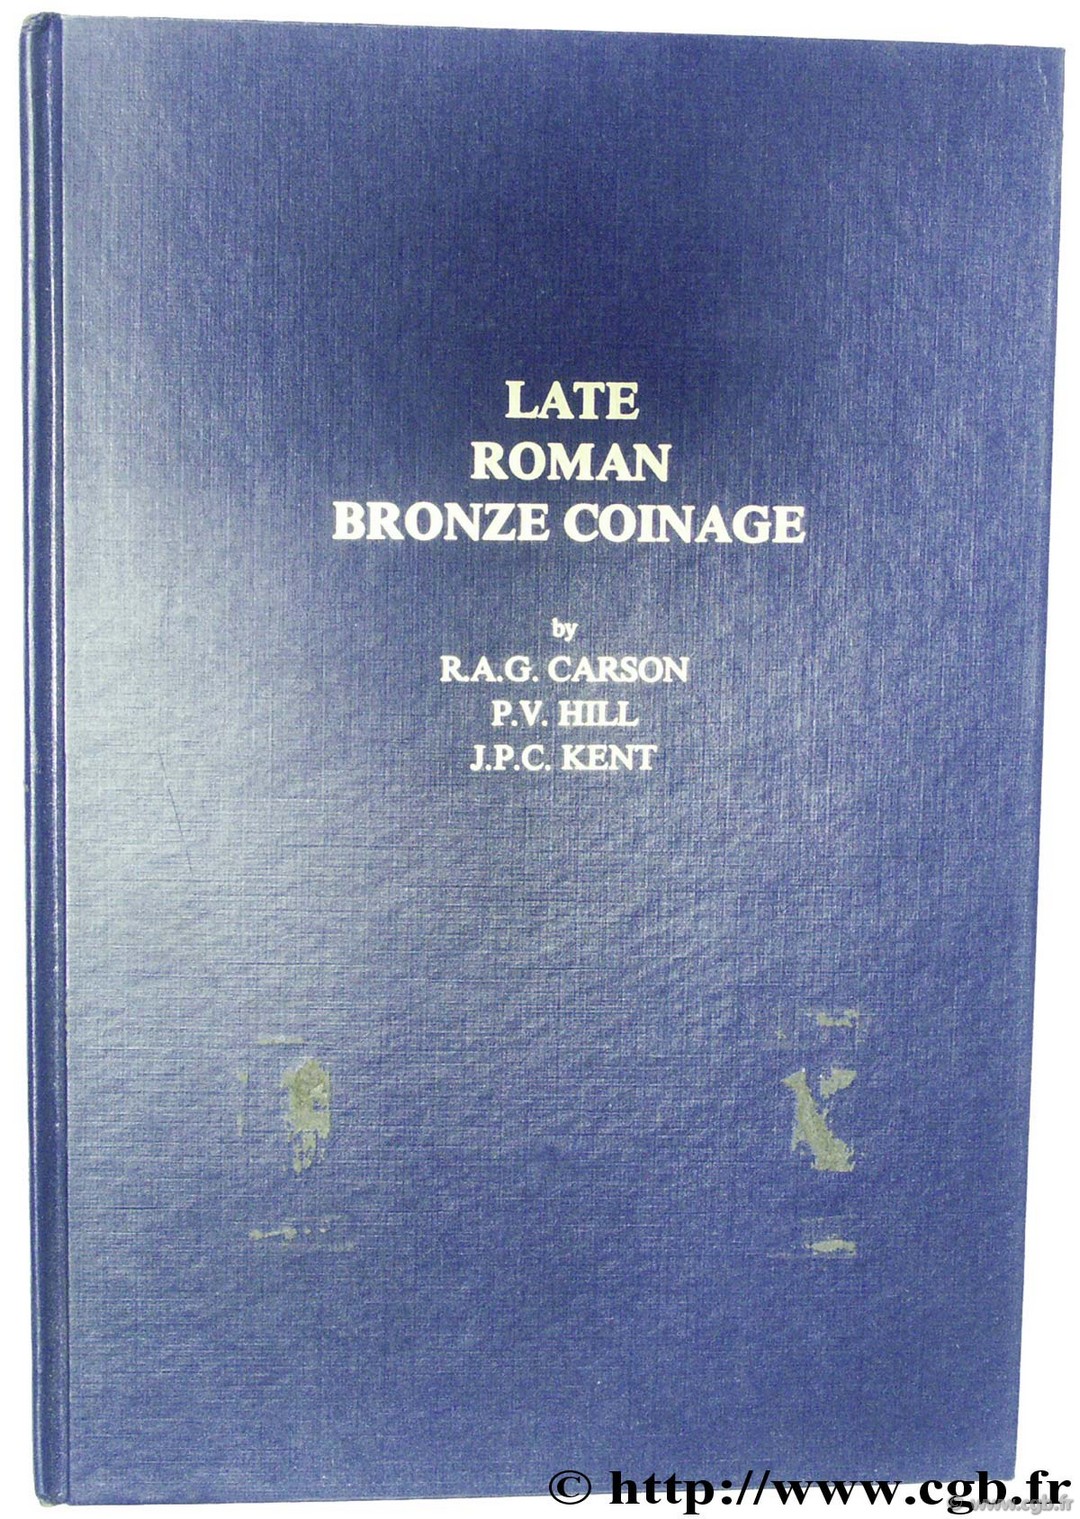 Late Roman Bronze Coins A.D. 324-498 CARSON R.-A.-G., HILL P.-V., KENT J.-P.-C.